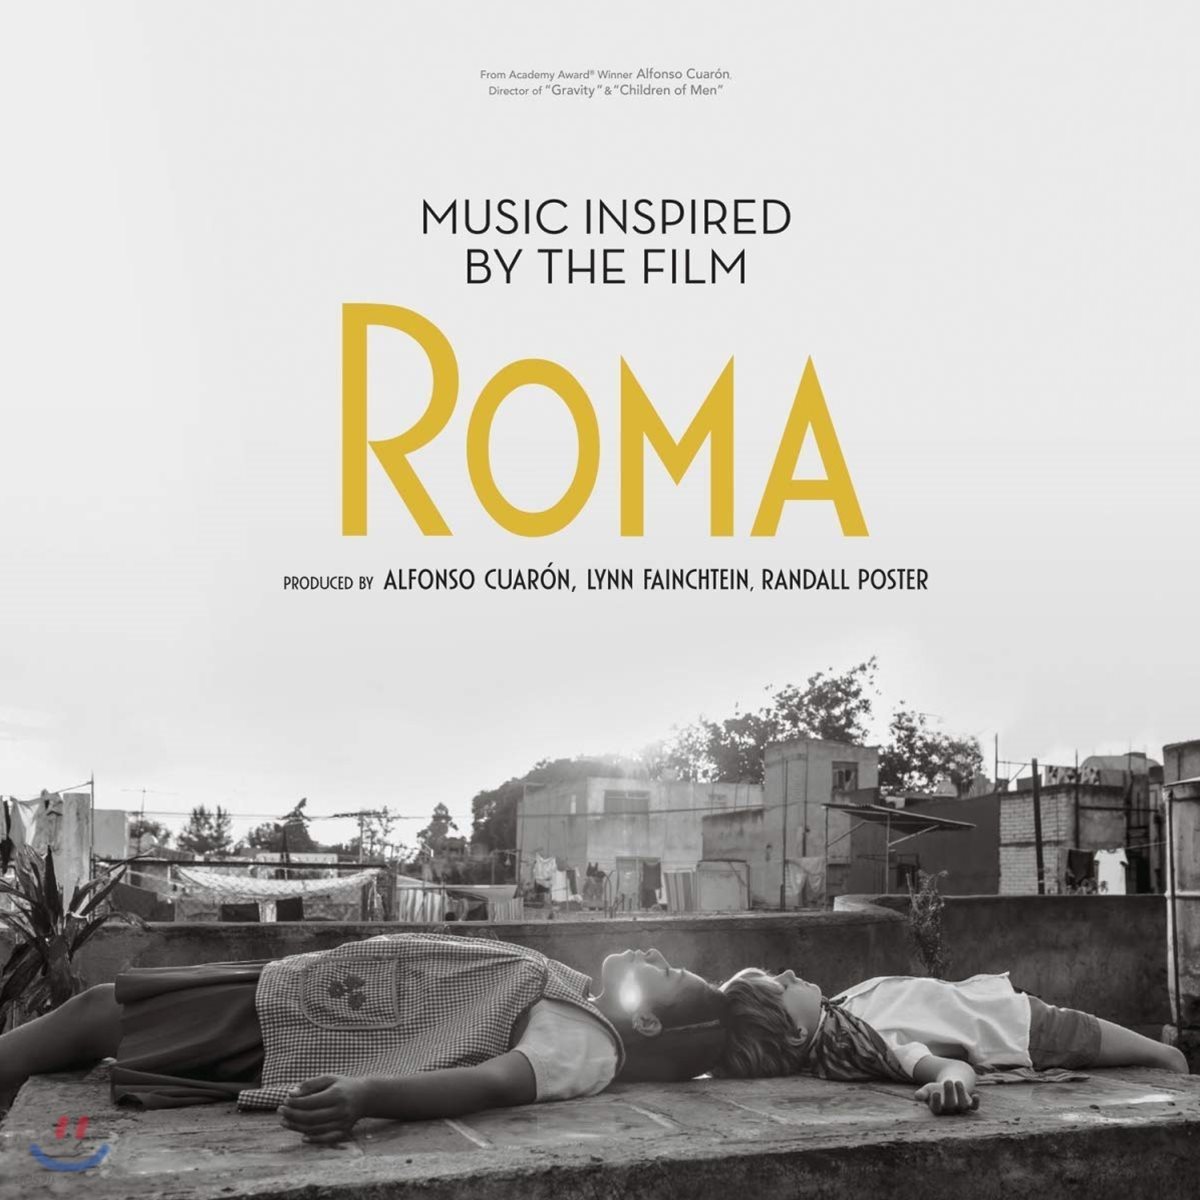 영화 &#39;로마&#39;로부터 영감을 받은 음악들 (Music Inspired by the Film Roma) 